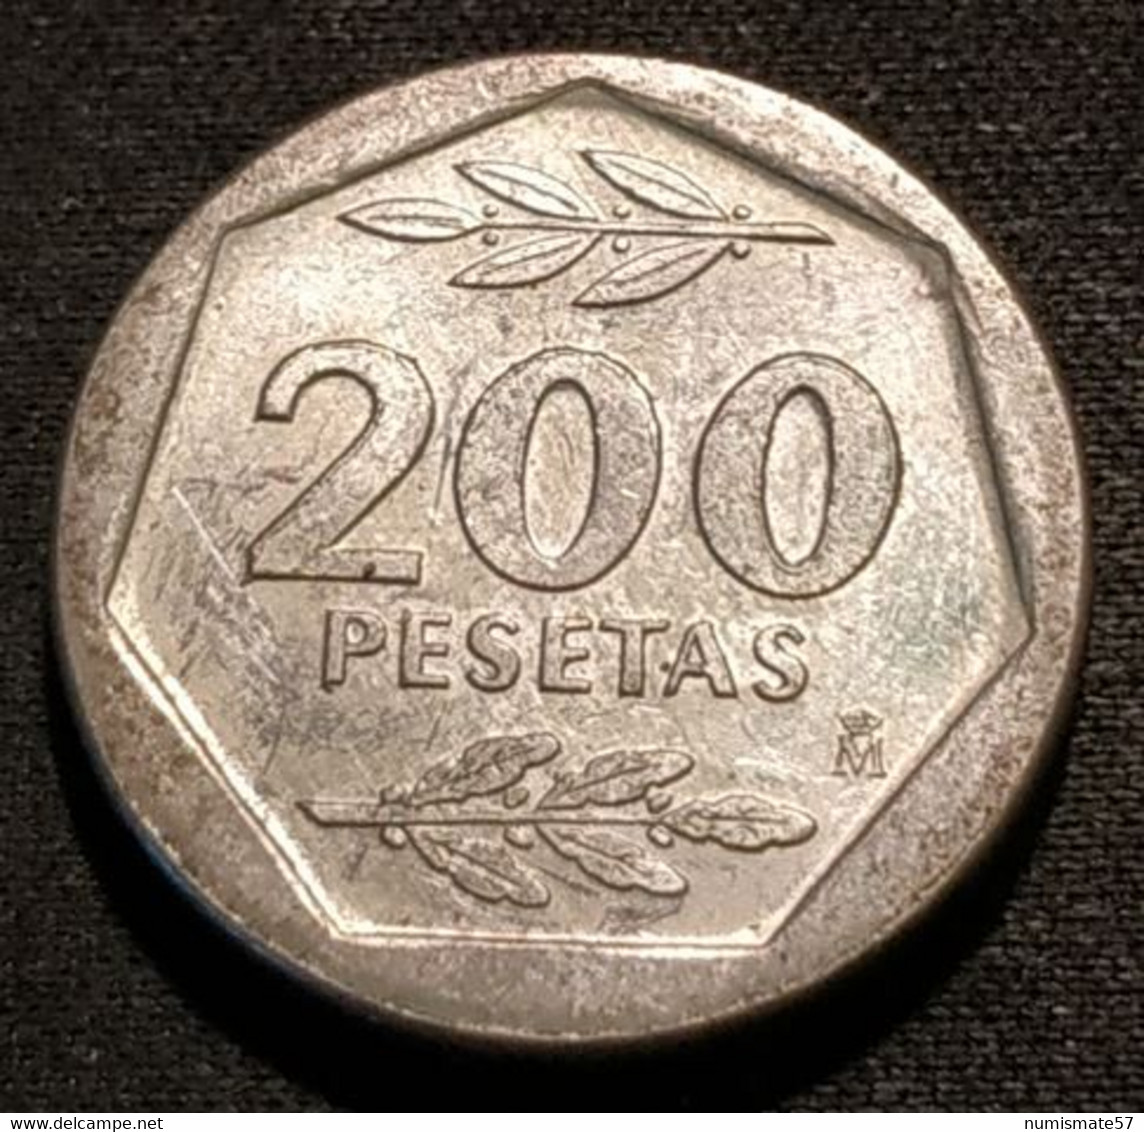 ESPAGNE - ESPANA - SPAIN - 200 PESETAS 1988 - Juan Carlos I - KM 829 - 200 Pesetas